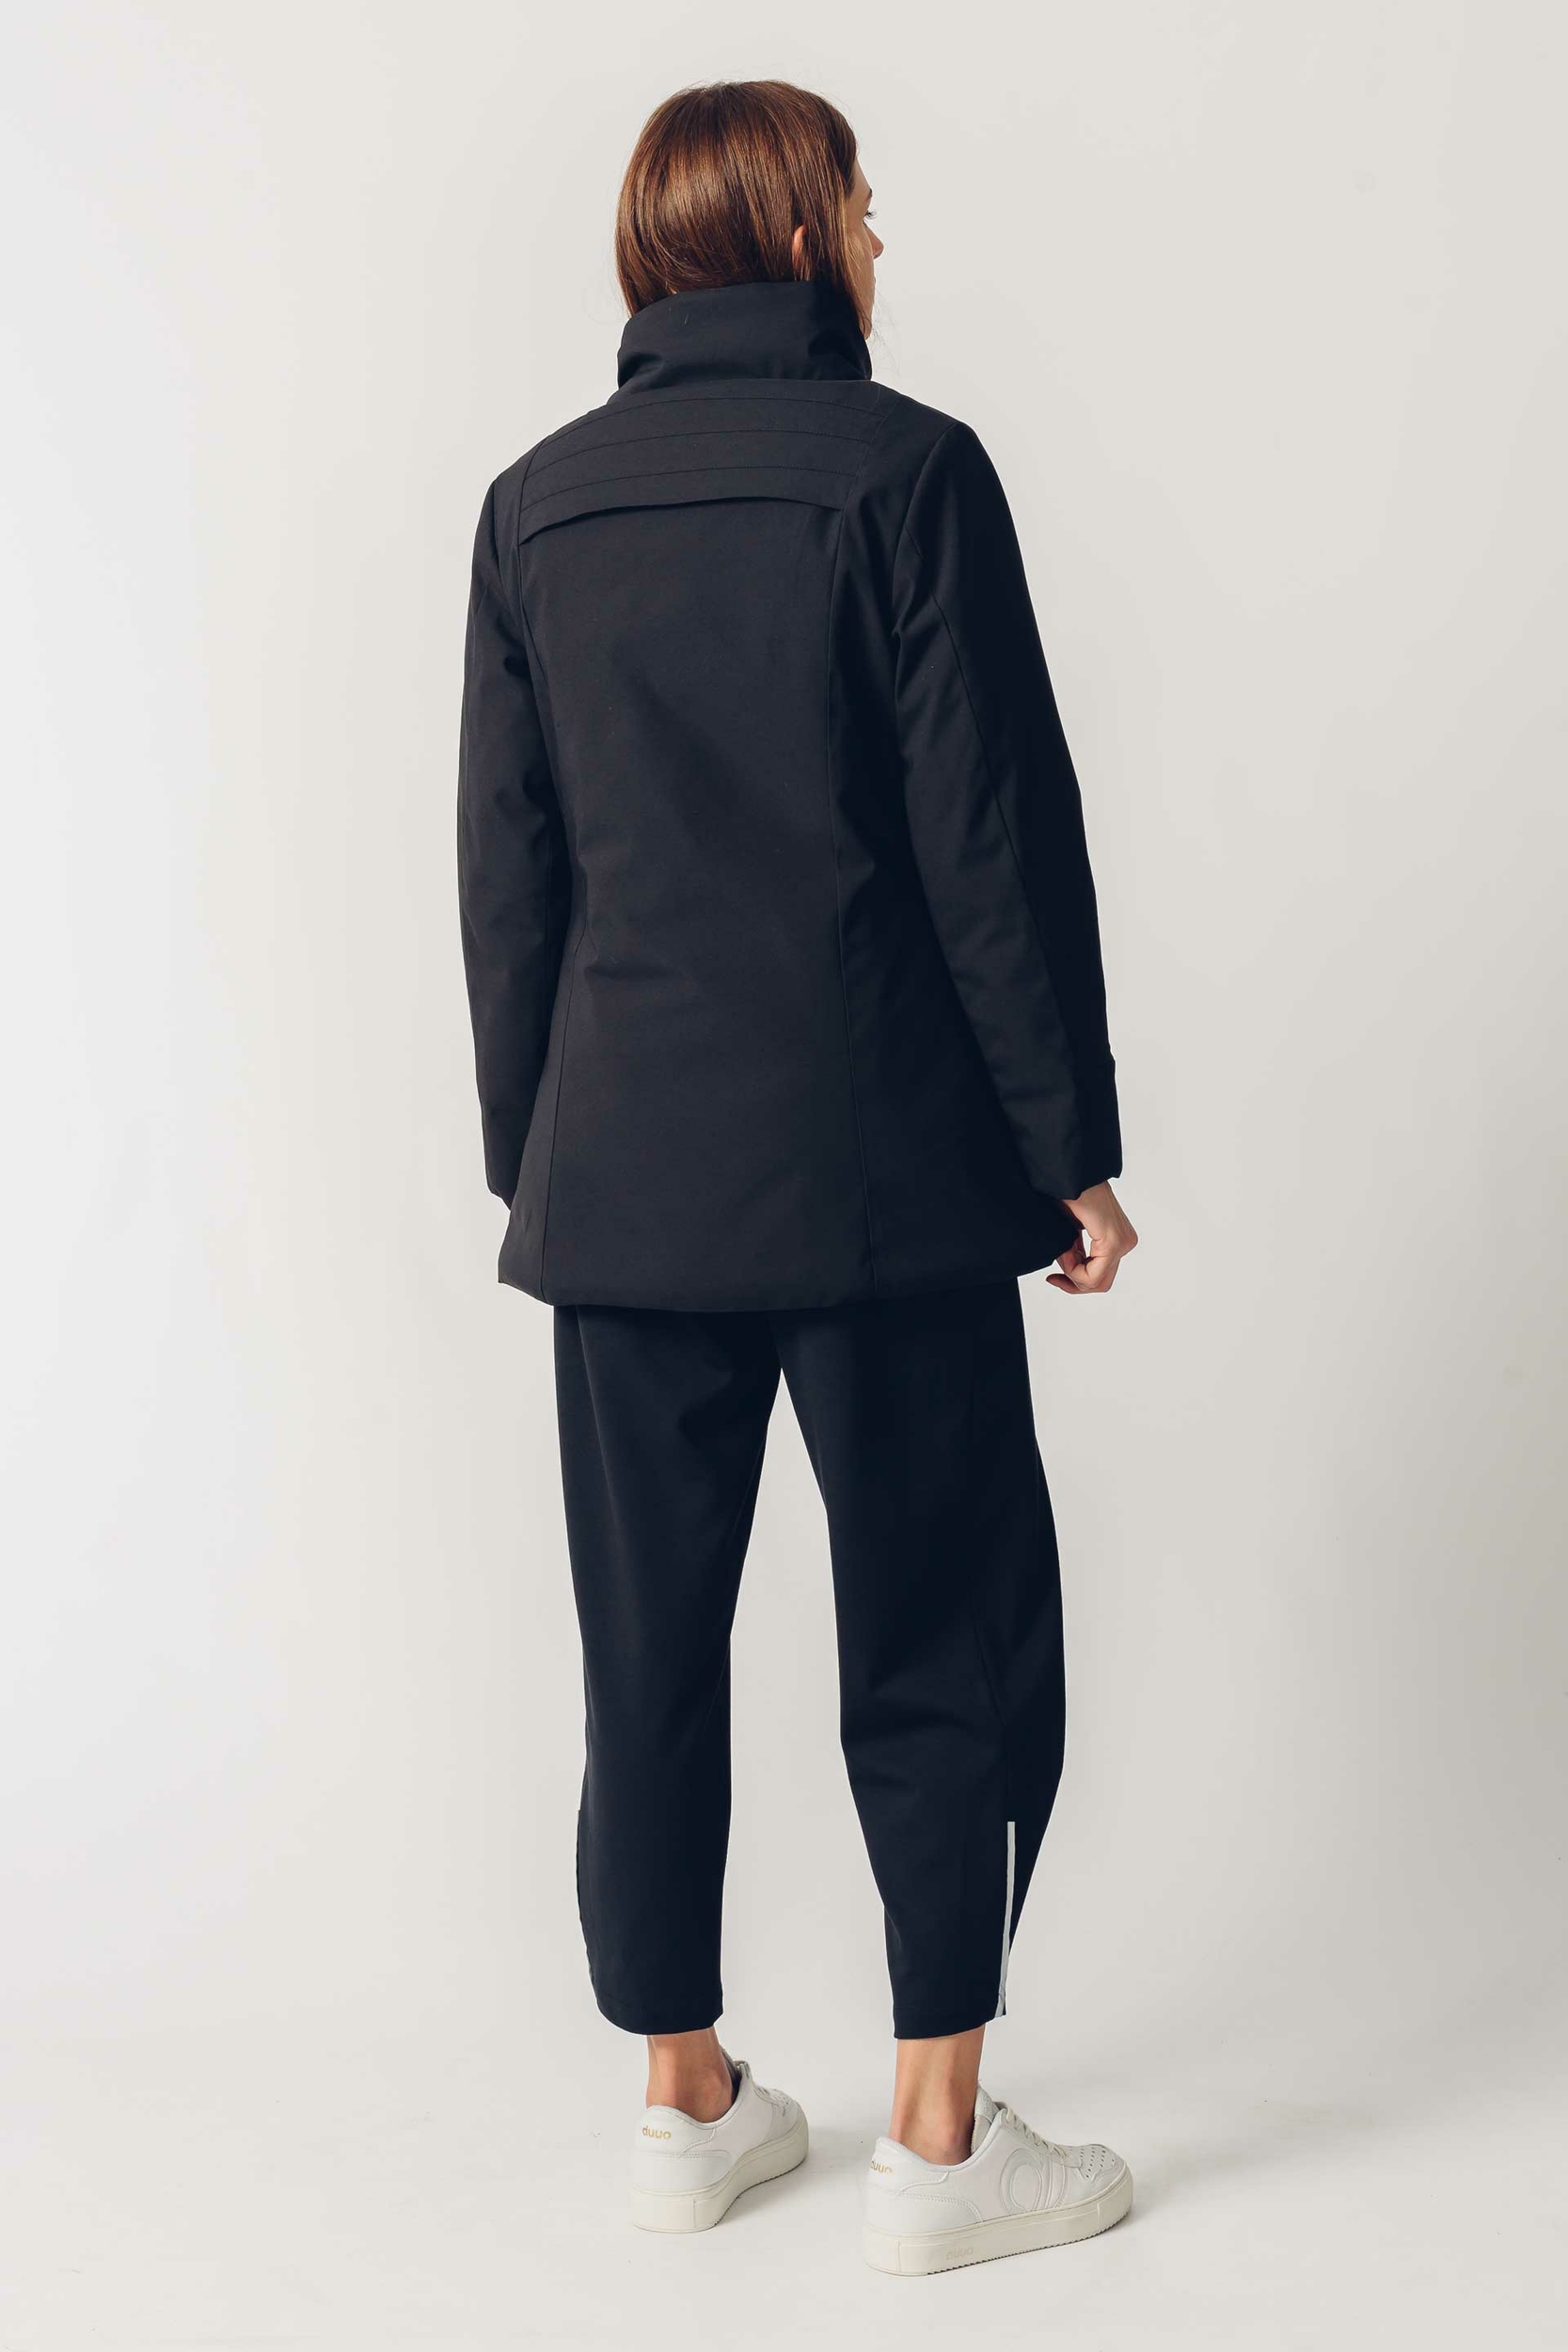 jacket-recycled-polyester-loizaga-skfk-wjc00261-2n-f5b